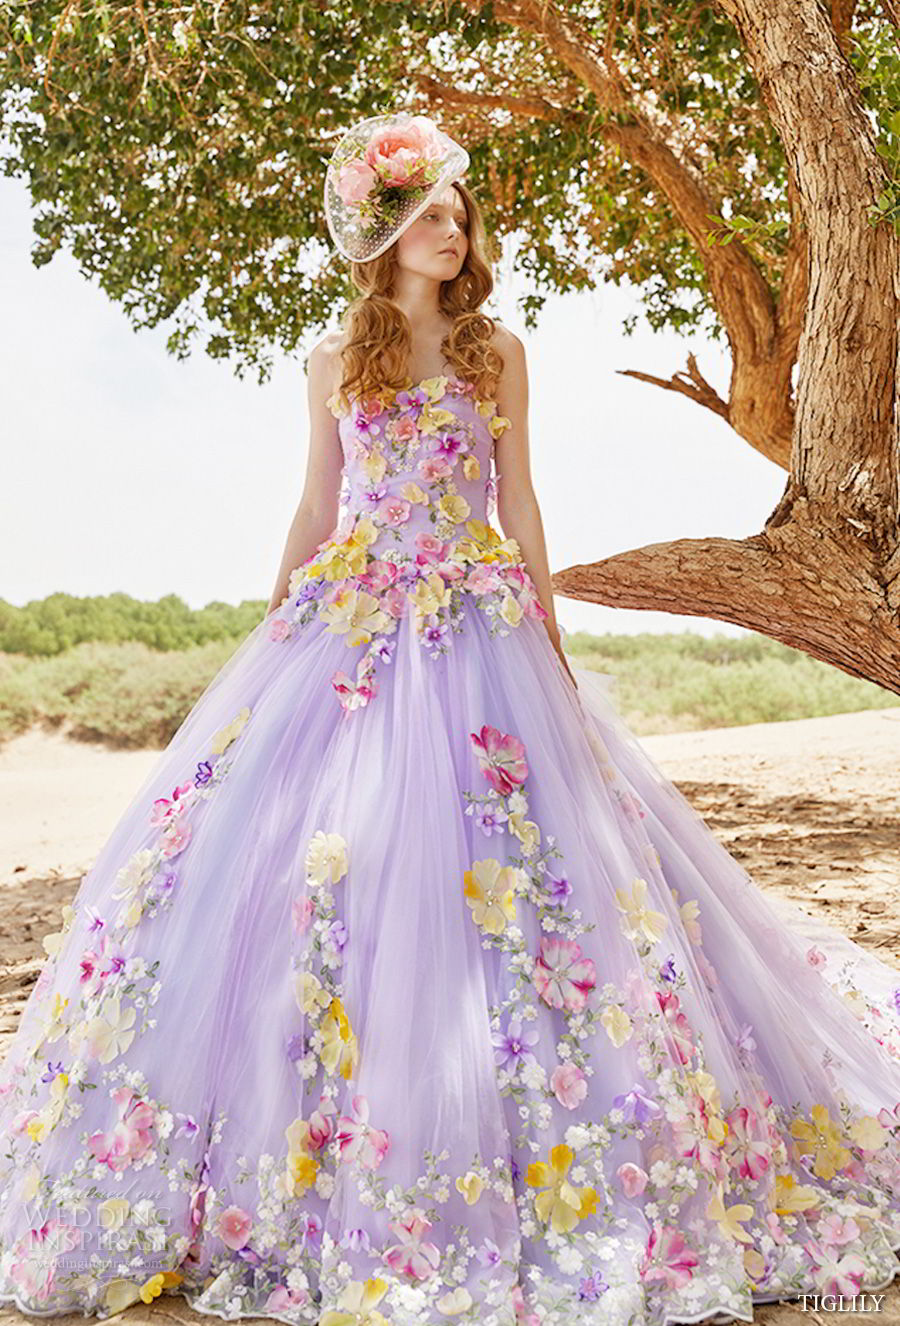 Цветное платье для невесты